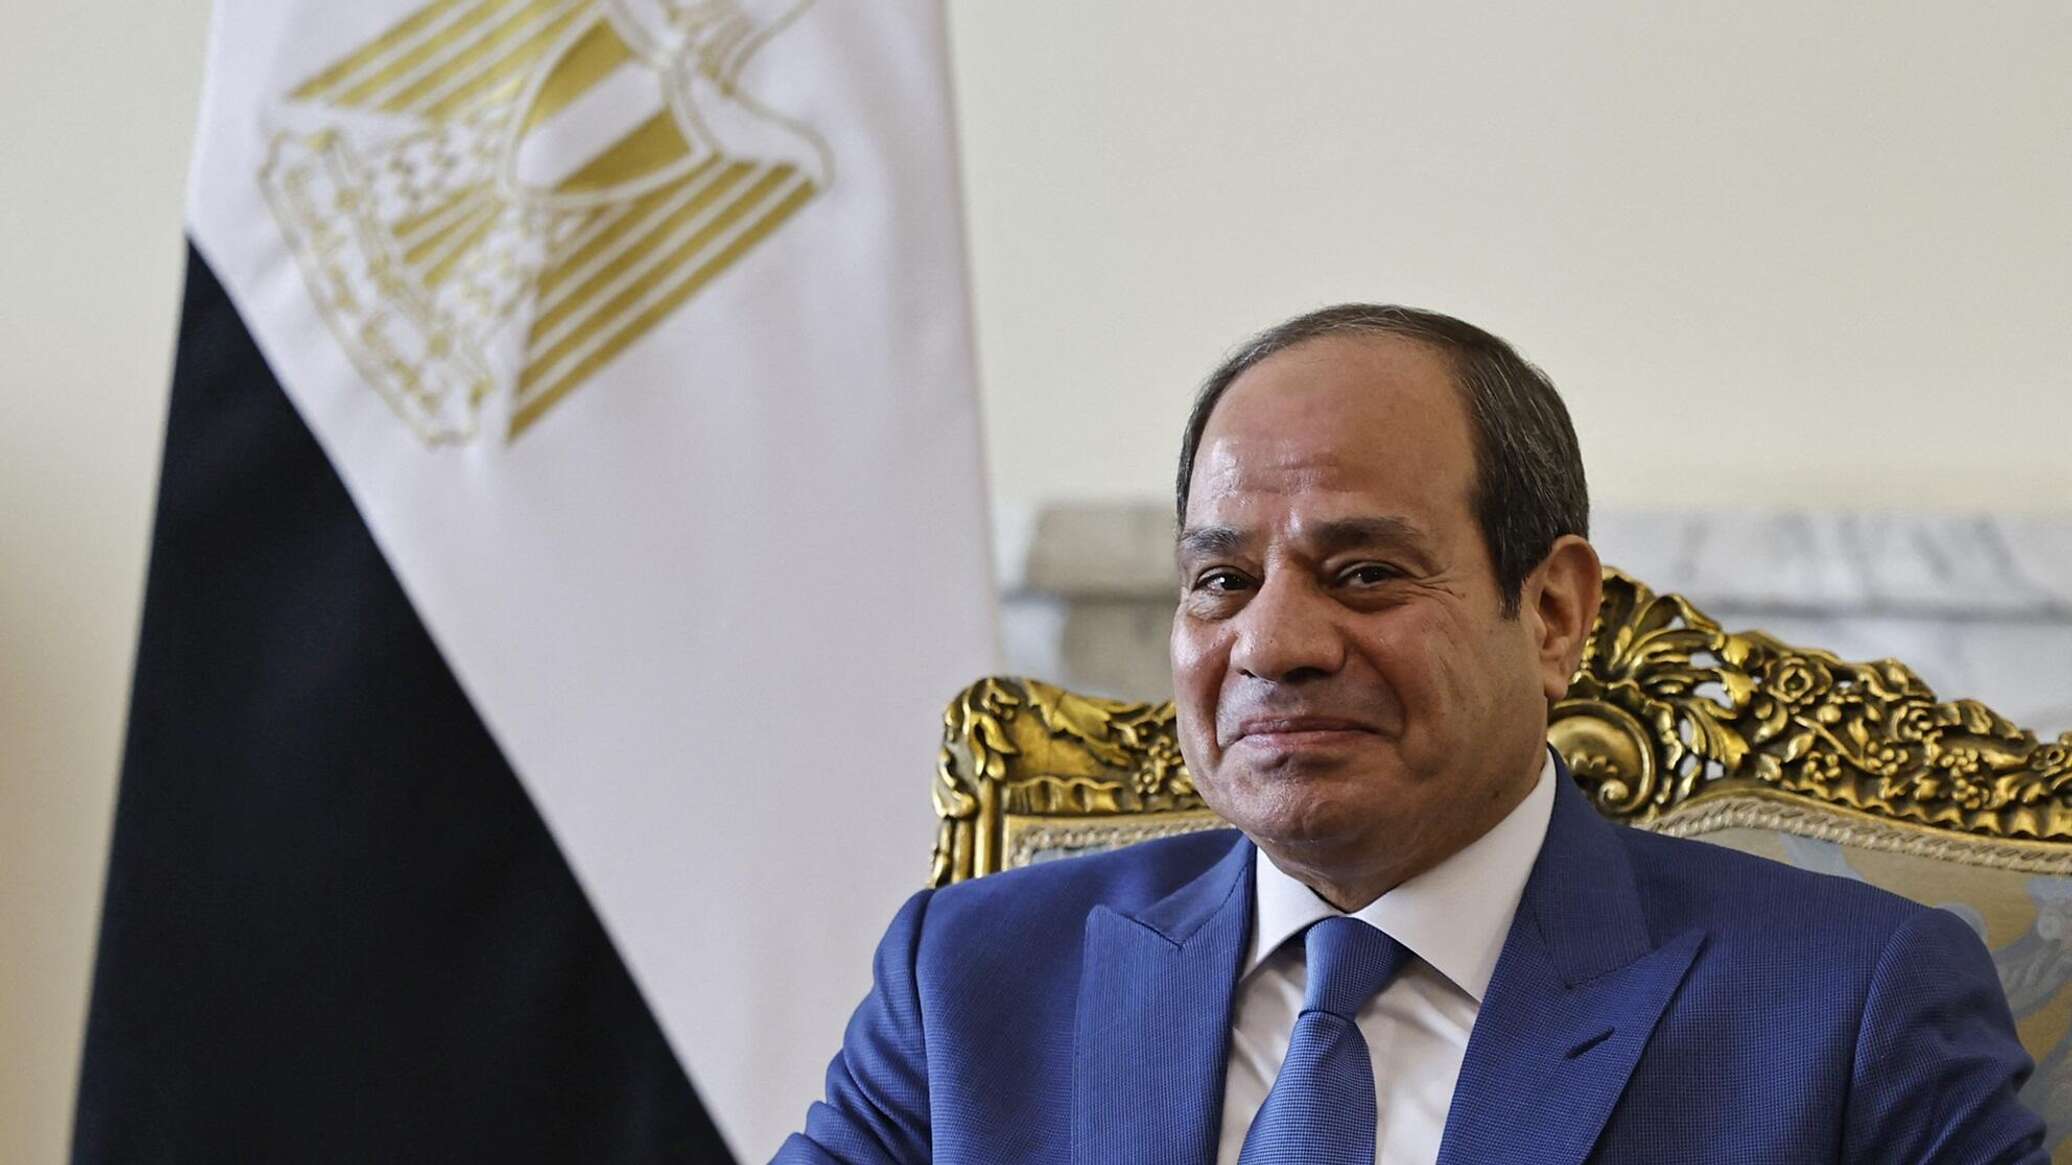 الرئيس المصري يؤدي اليمين الدستورية لولاية رئاسية جديدة أمام البرلمان